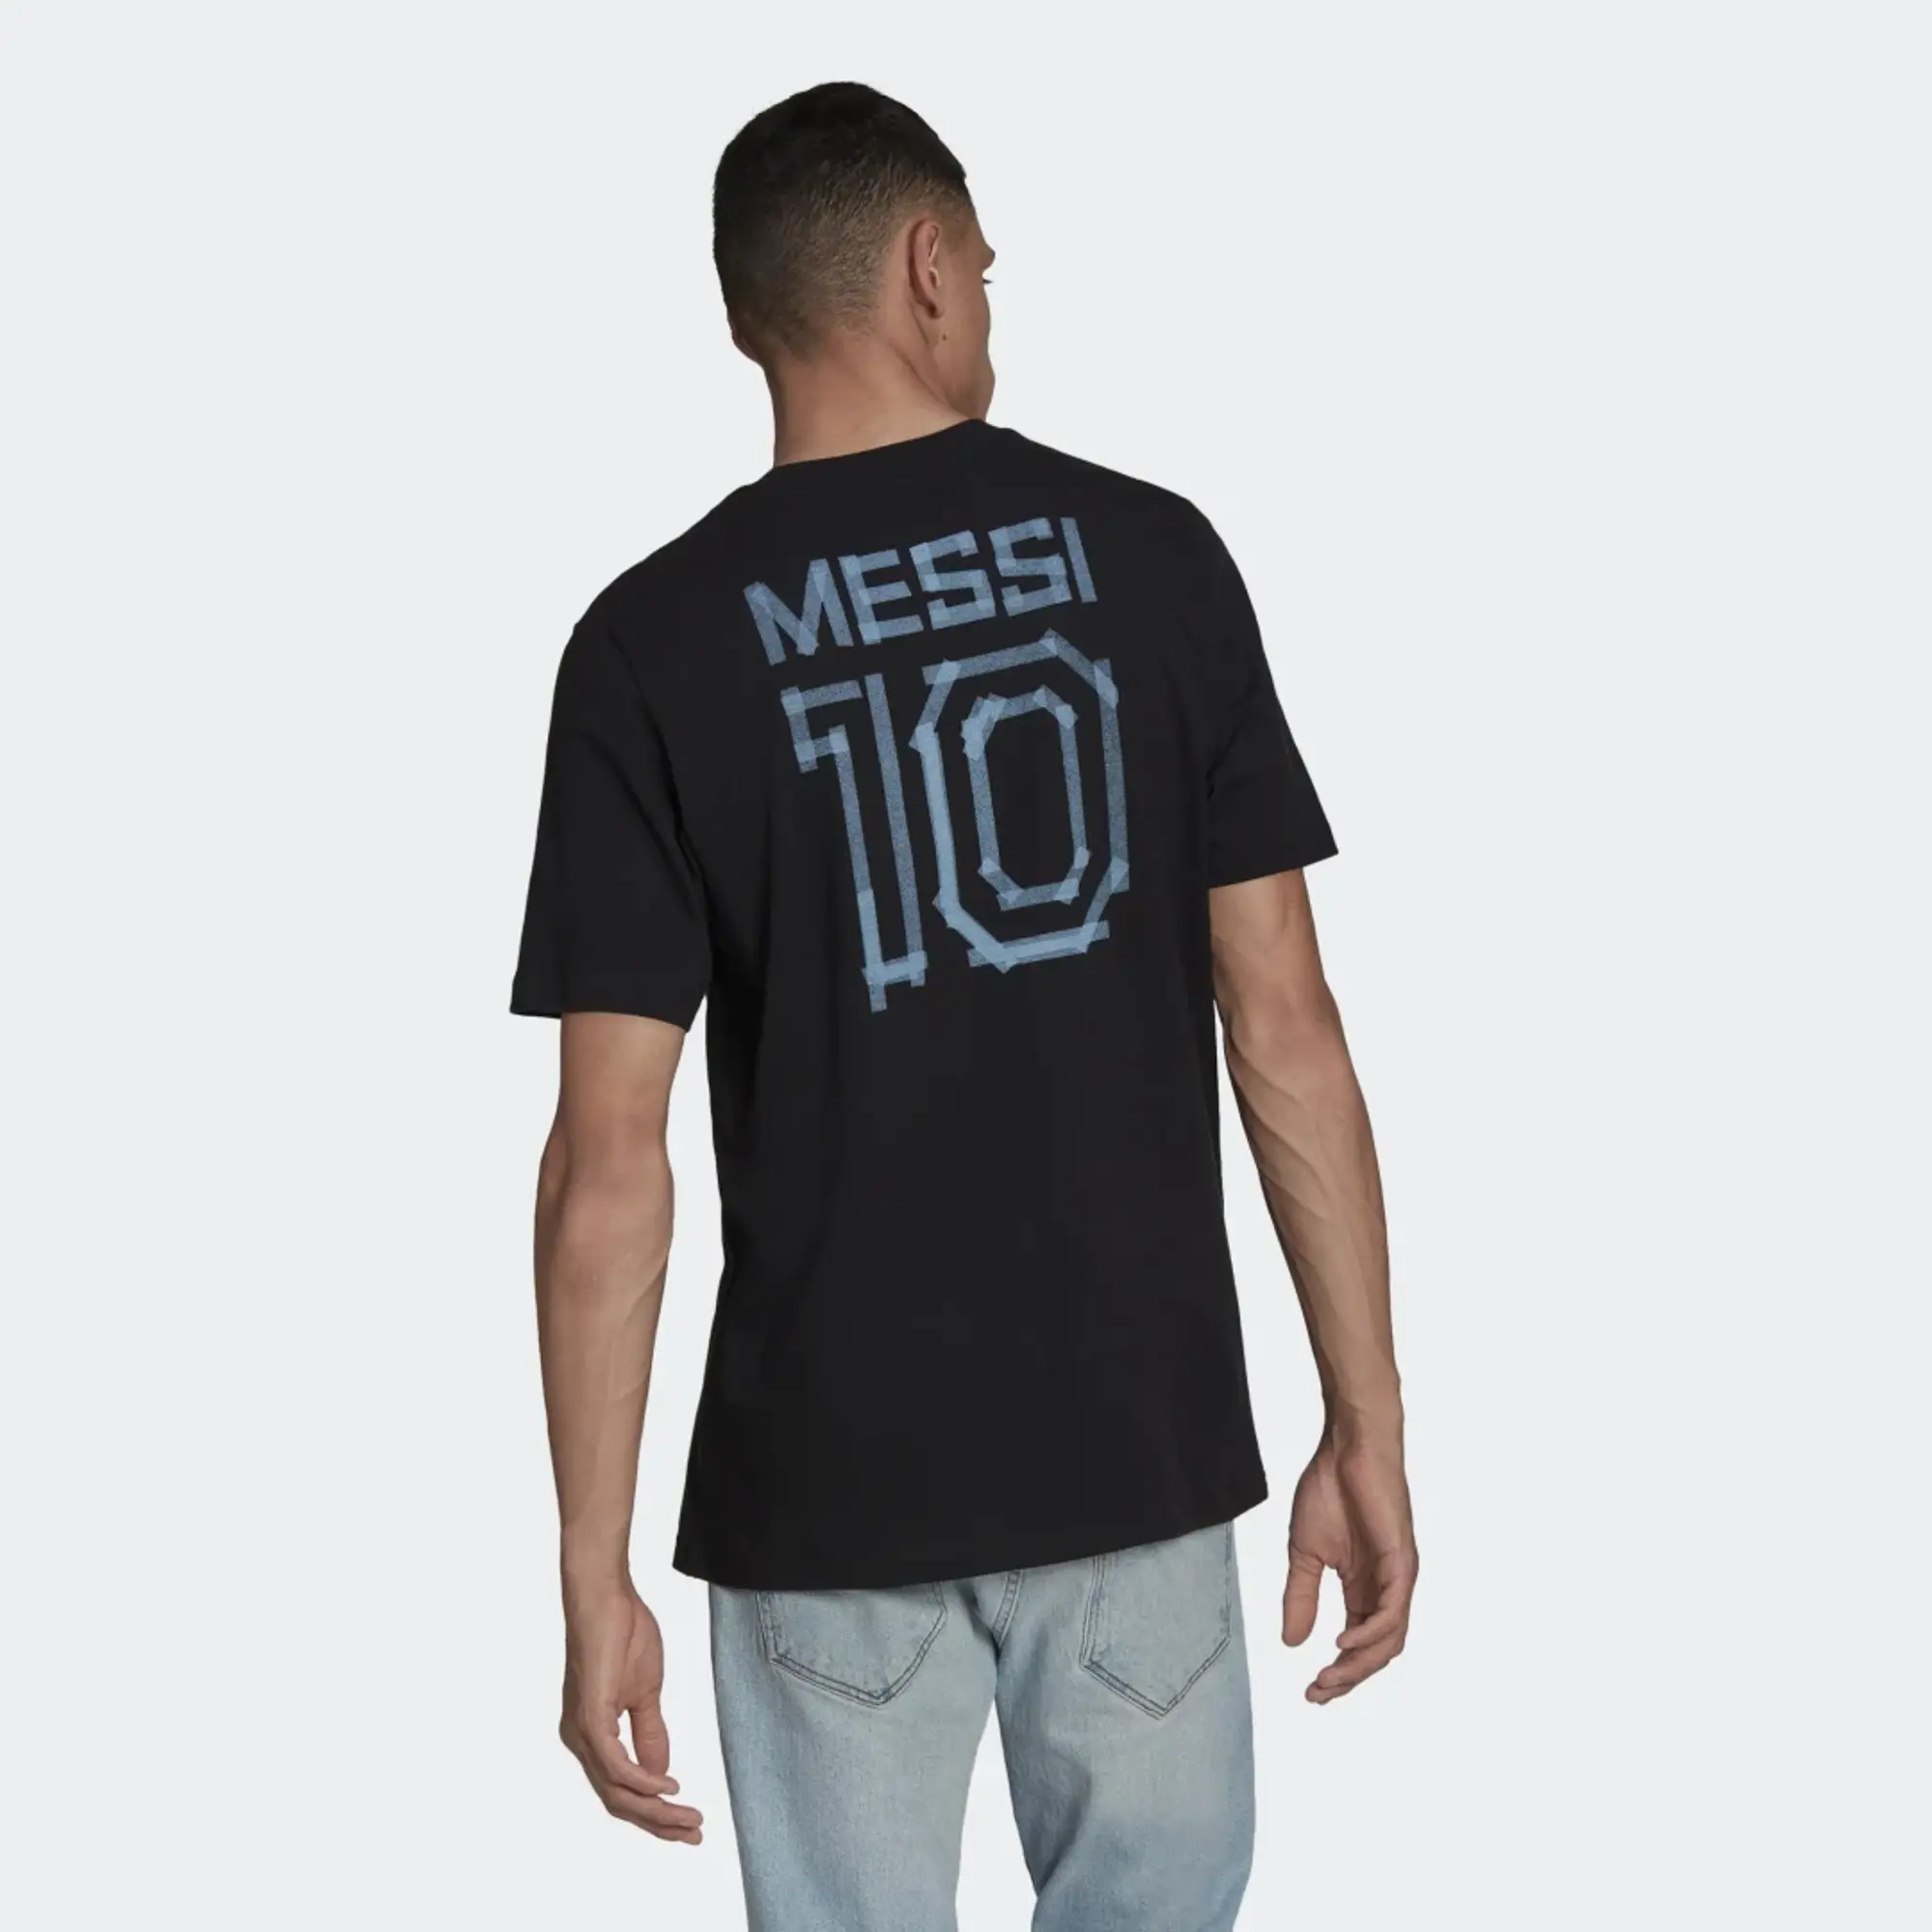 adidas Messi Icon Football Graphic T-Shirt - Black, Black